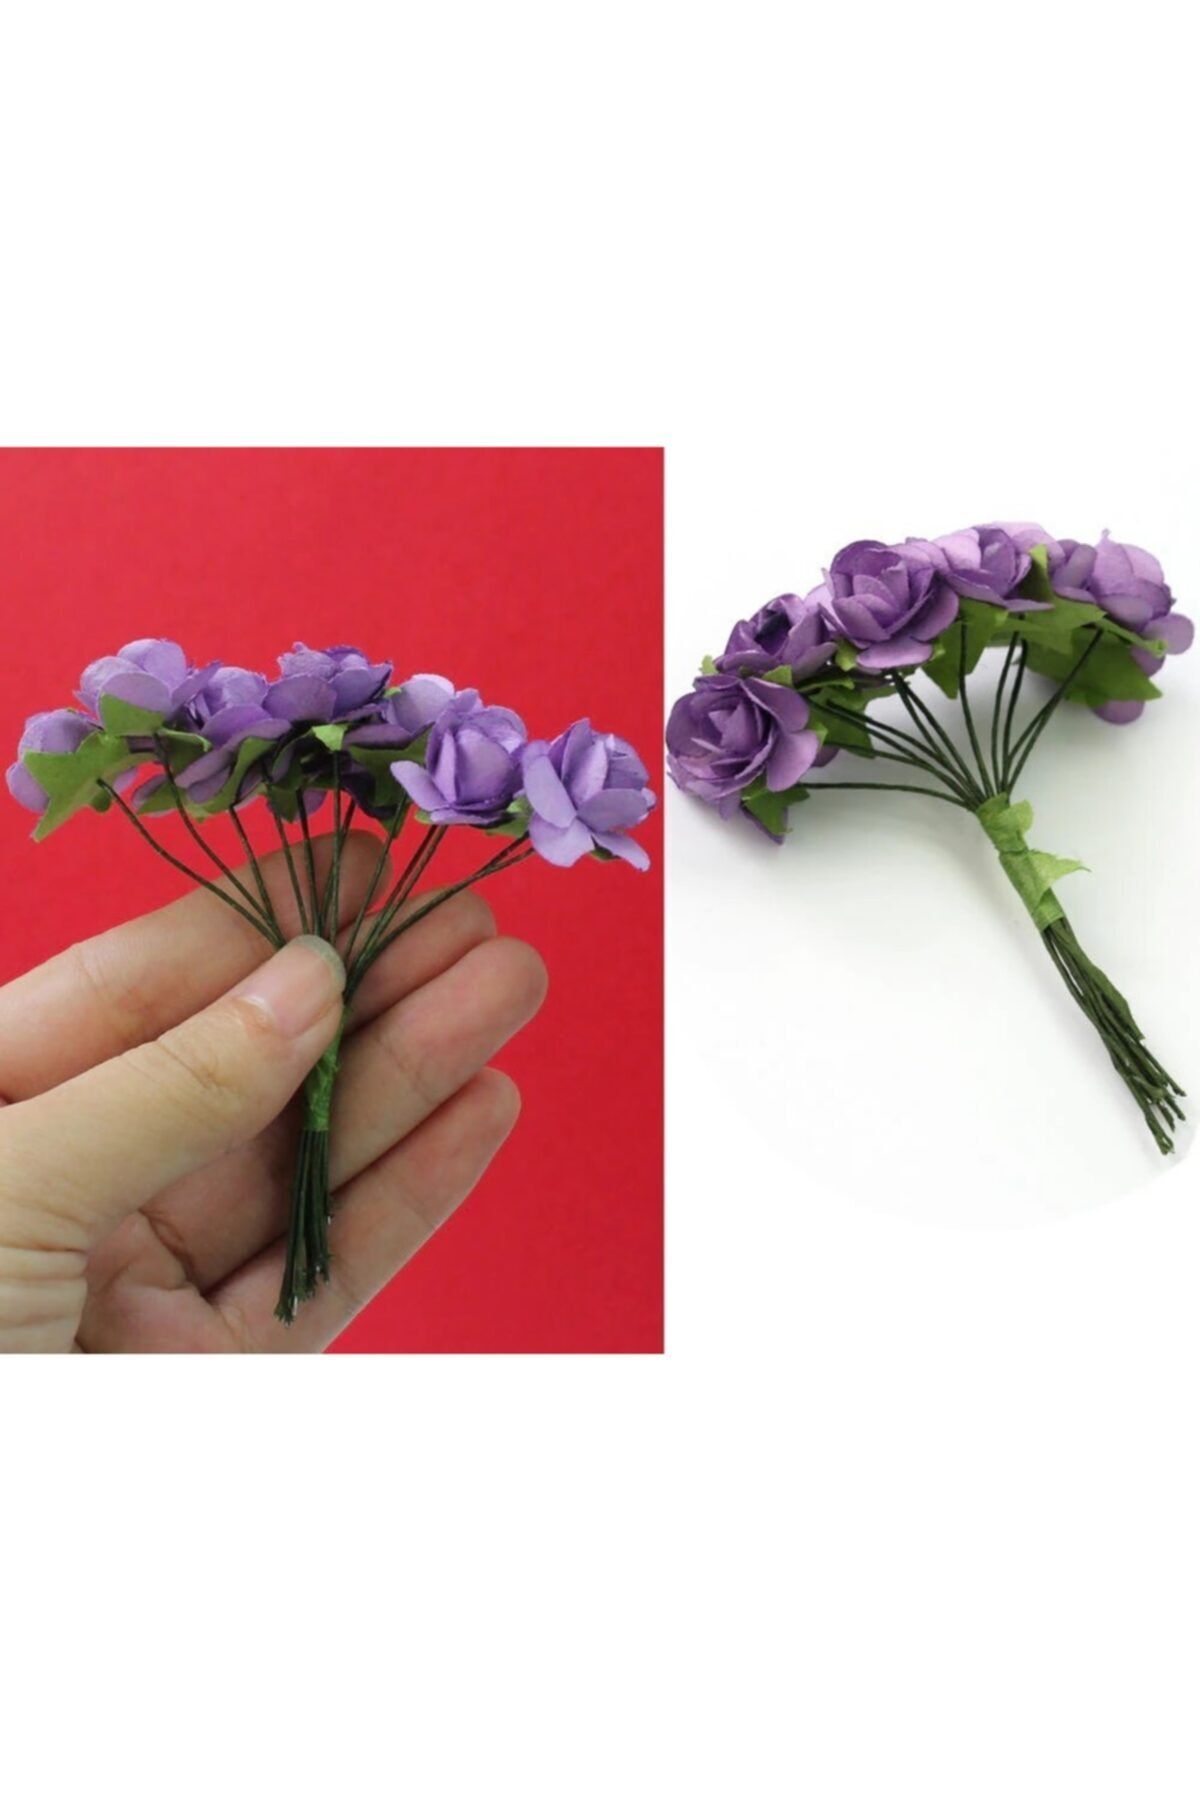 Aker Hediyelik Mor Kağıt Gül 144lü Kağıt Güller El Işi Süsleme Hobi Dekorasyon Tasarım Yapay Çiçek Aranjman